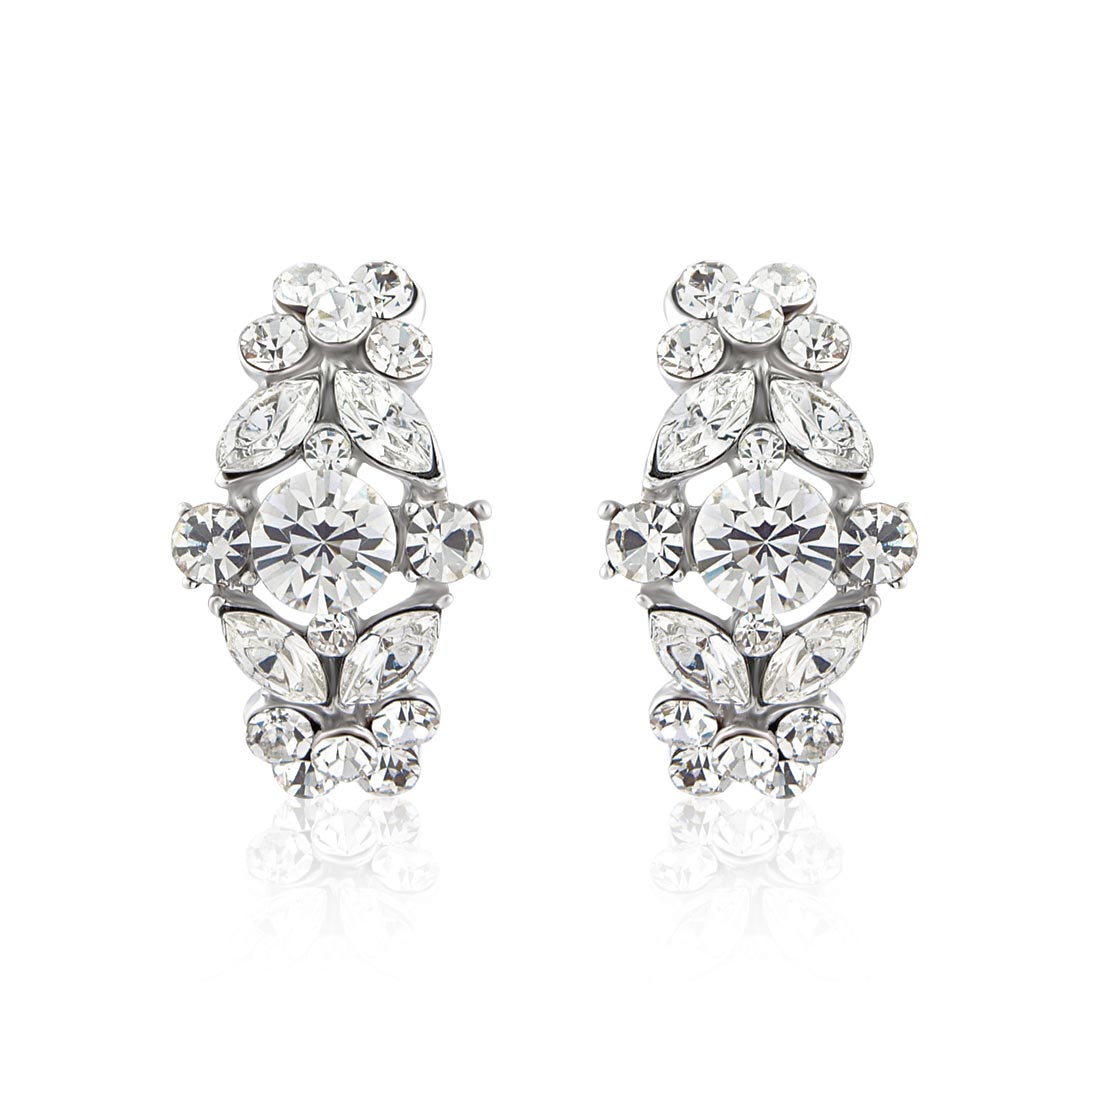 Bejewelled Starlet Crystal Cluster Wedding Earrings